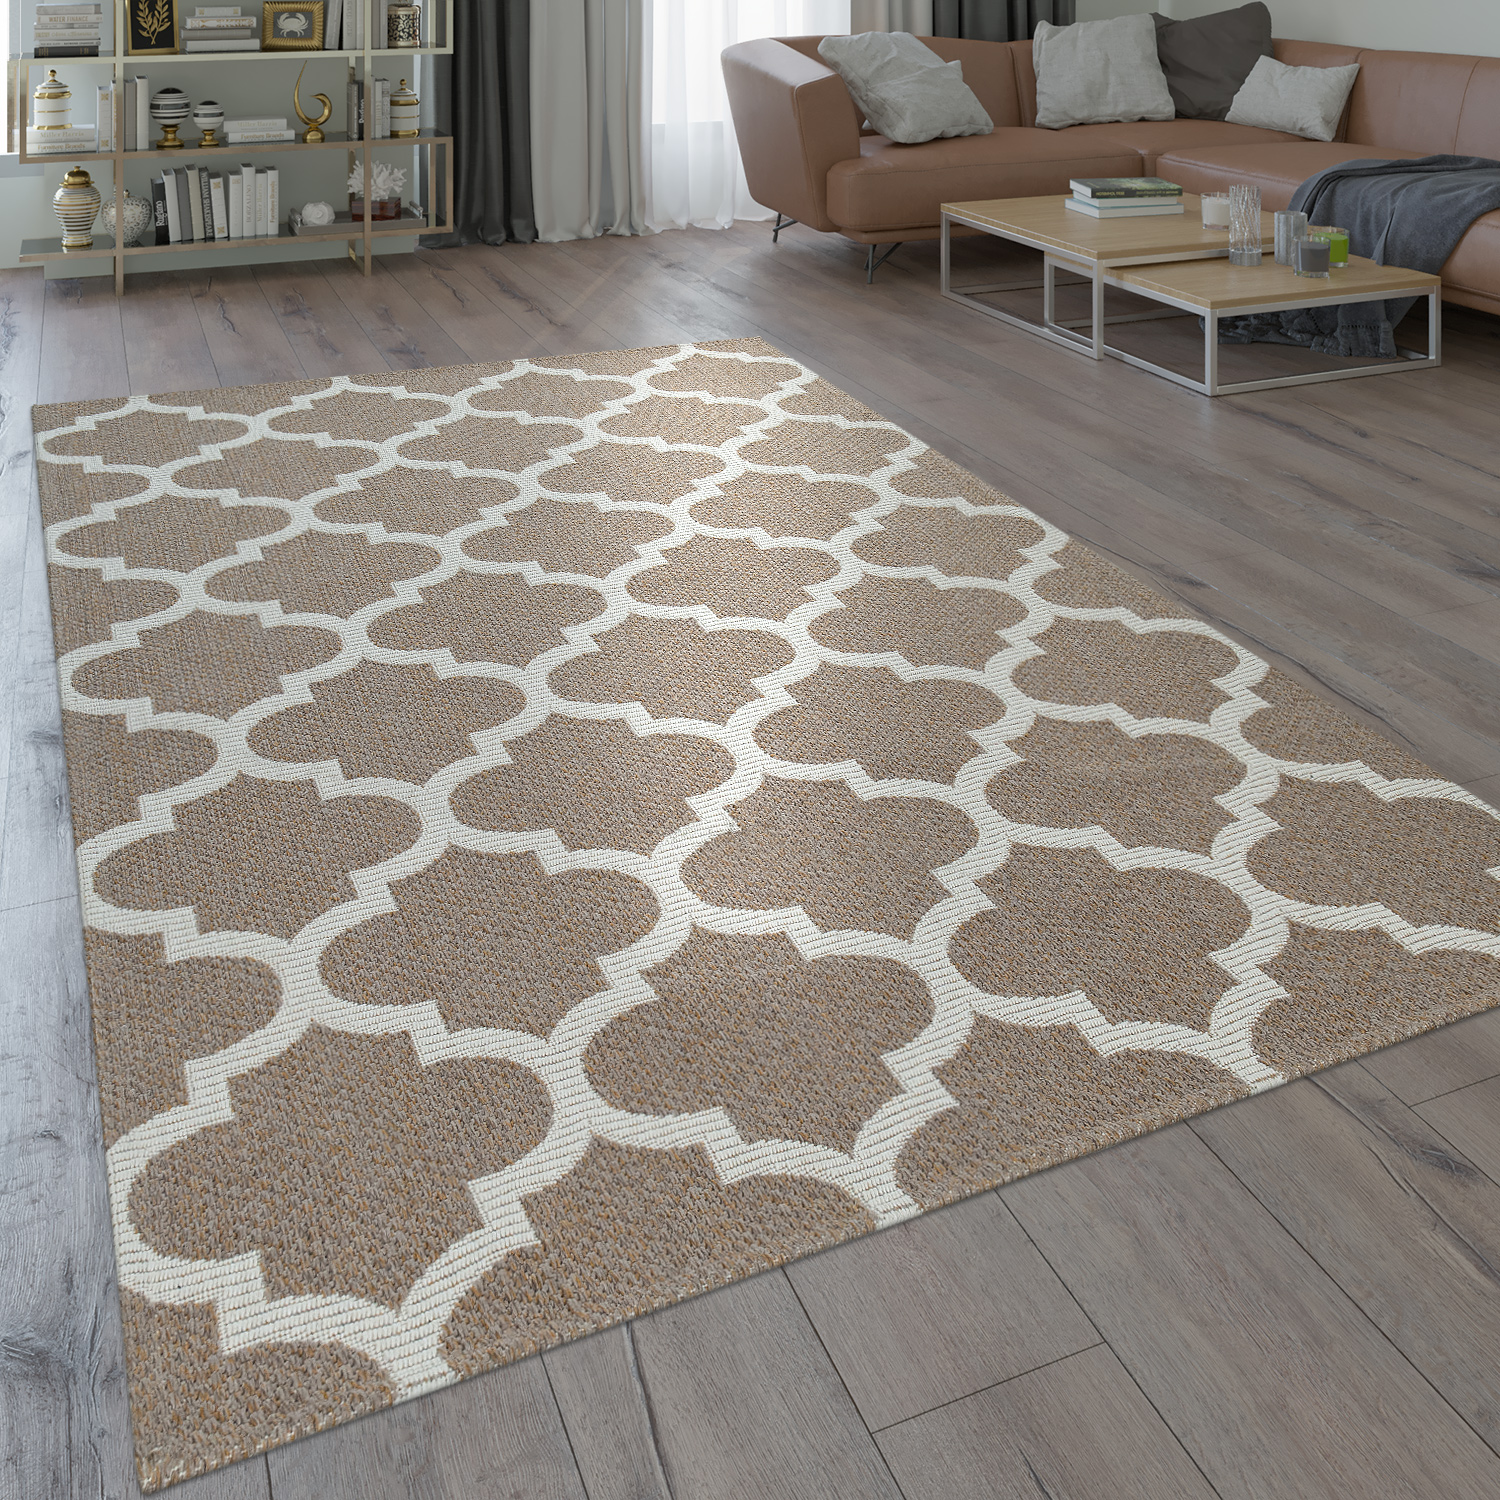 Teppich Marokkanisches Design Maroc Muster Teppiche Verlauf Grau Anthrazit 